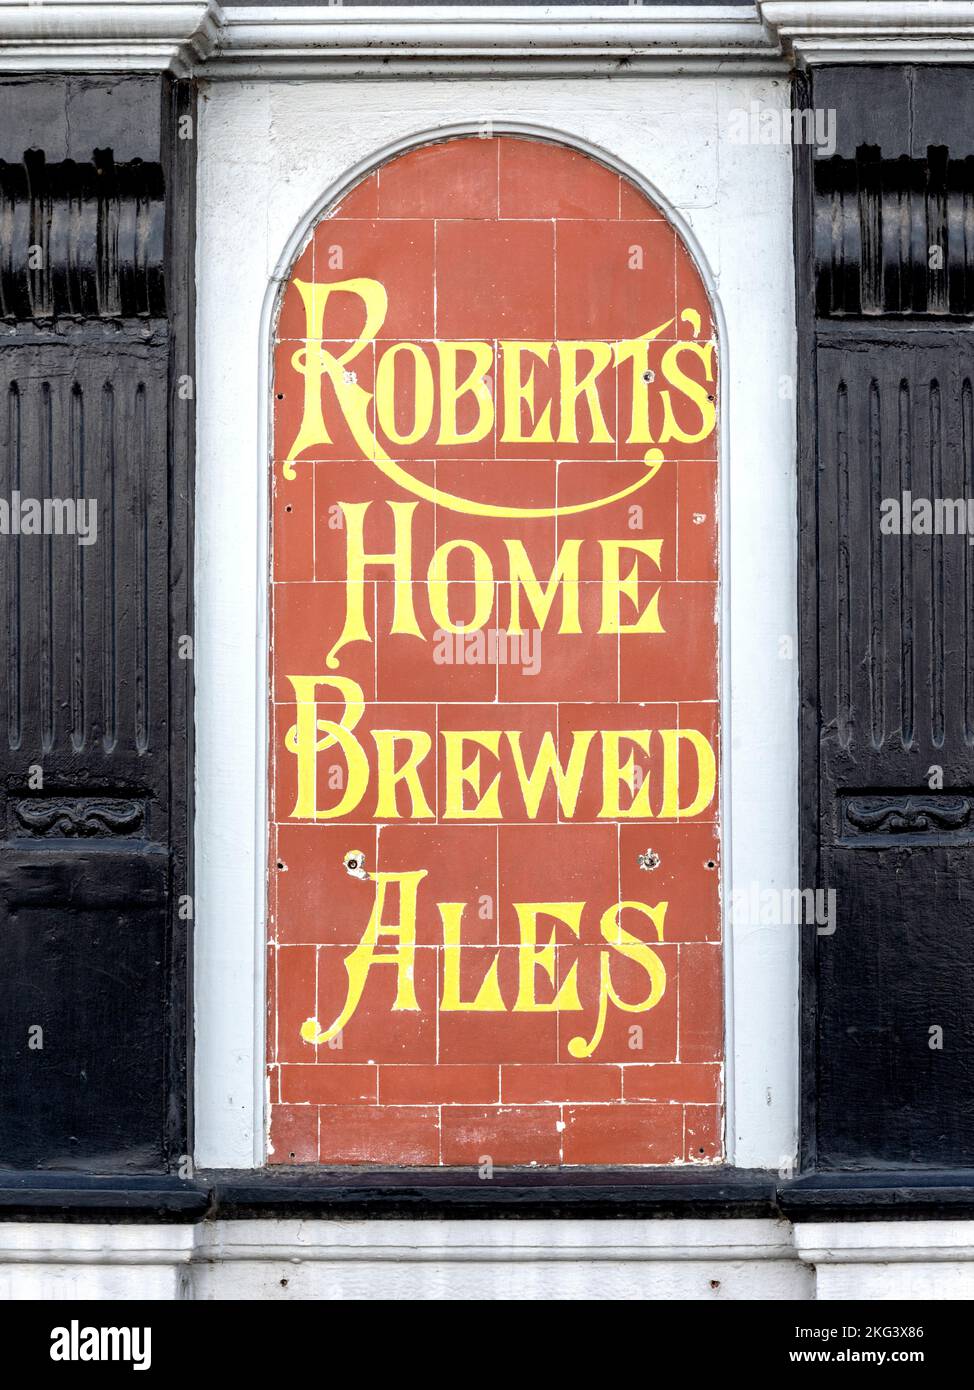 Une publicité en carreaux rouges du XIXe siècle à la maison publique de Corporation Arms pour Roberts Home Brewed Ales, Ruthin, Denbighshire, pays de Galles, Royaume-Uni Banque D'Images